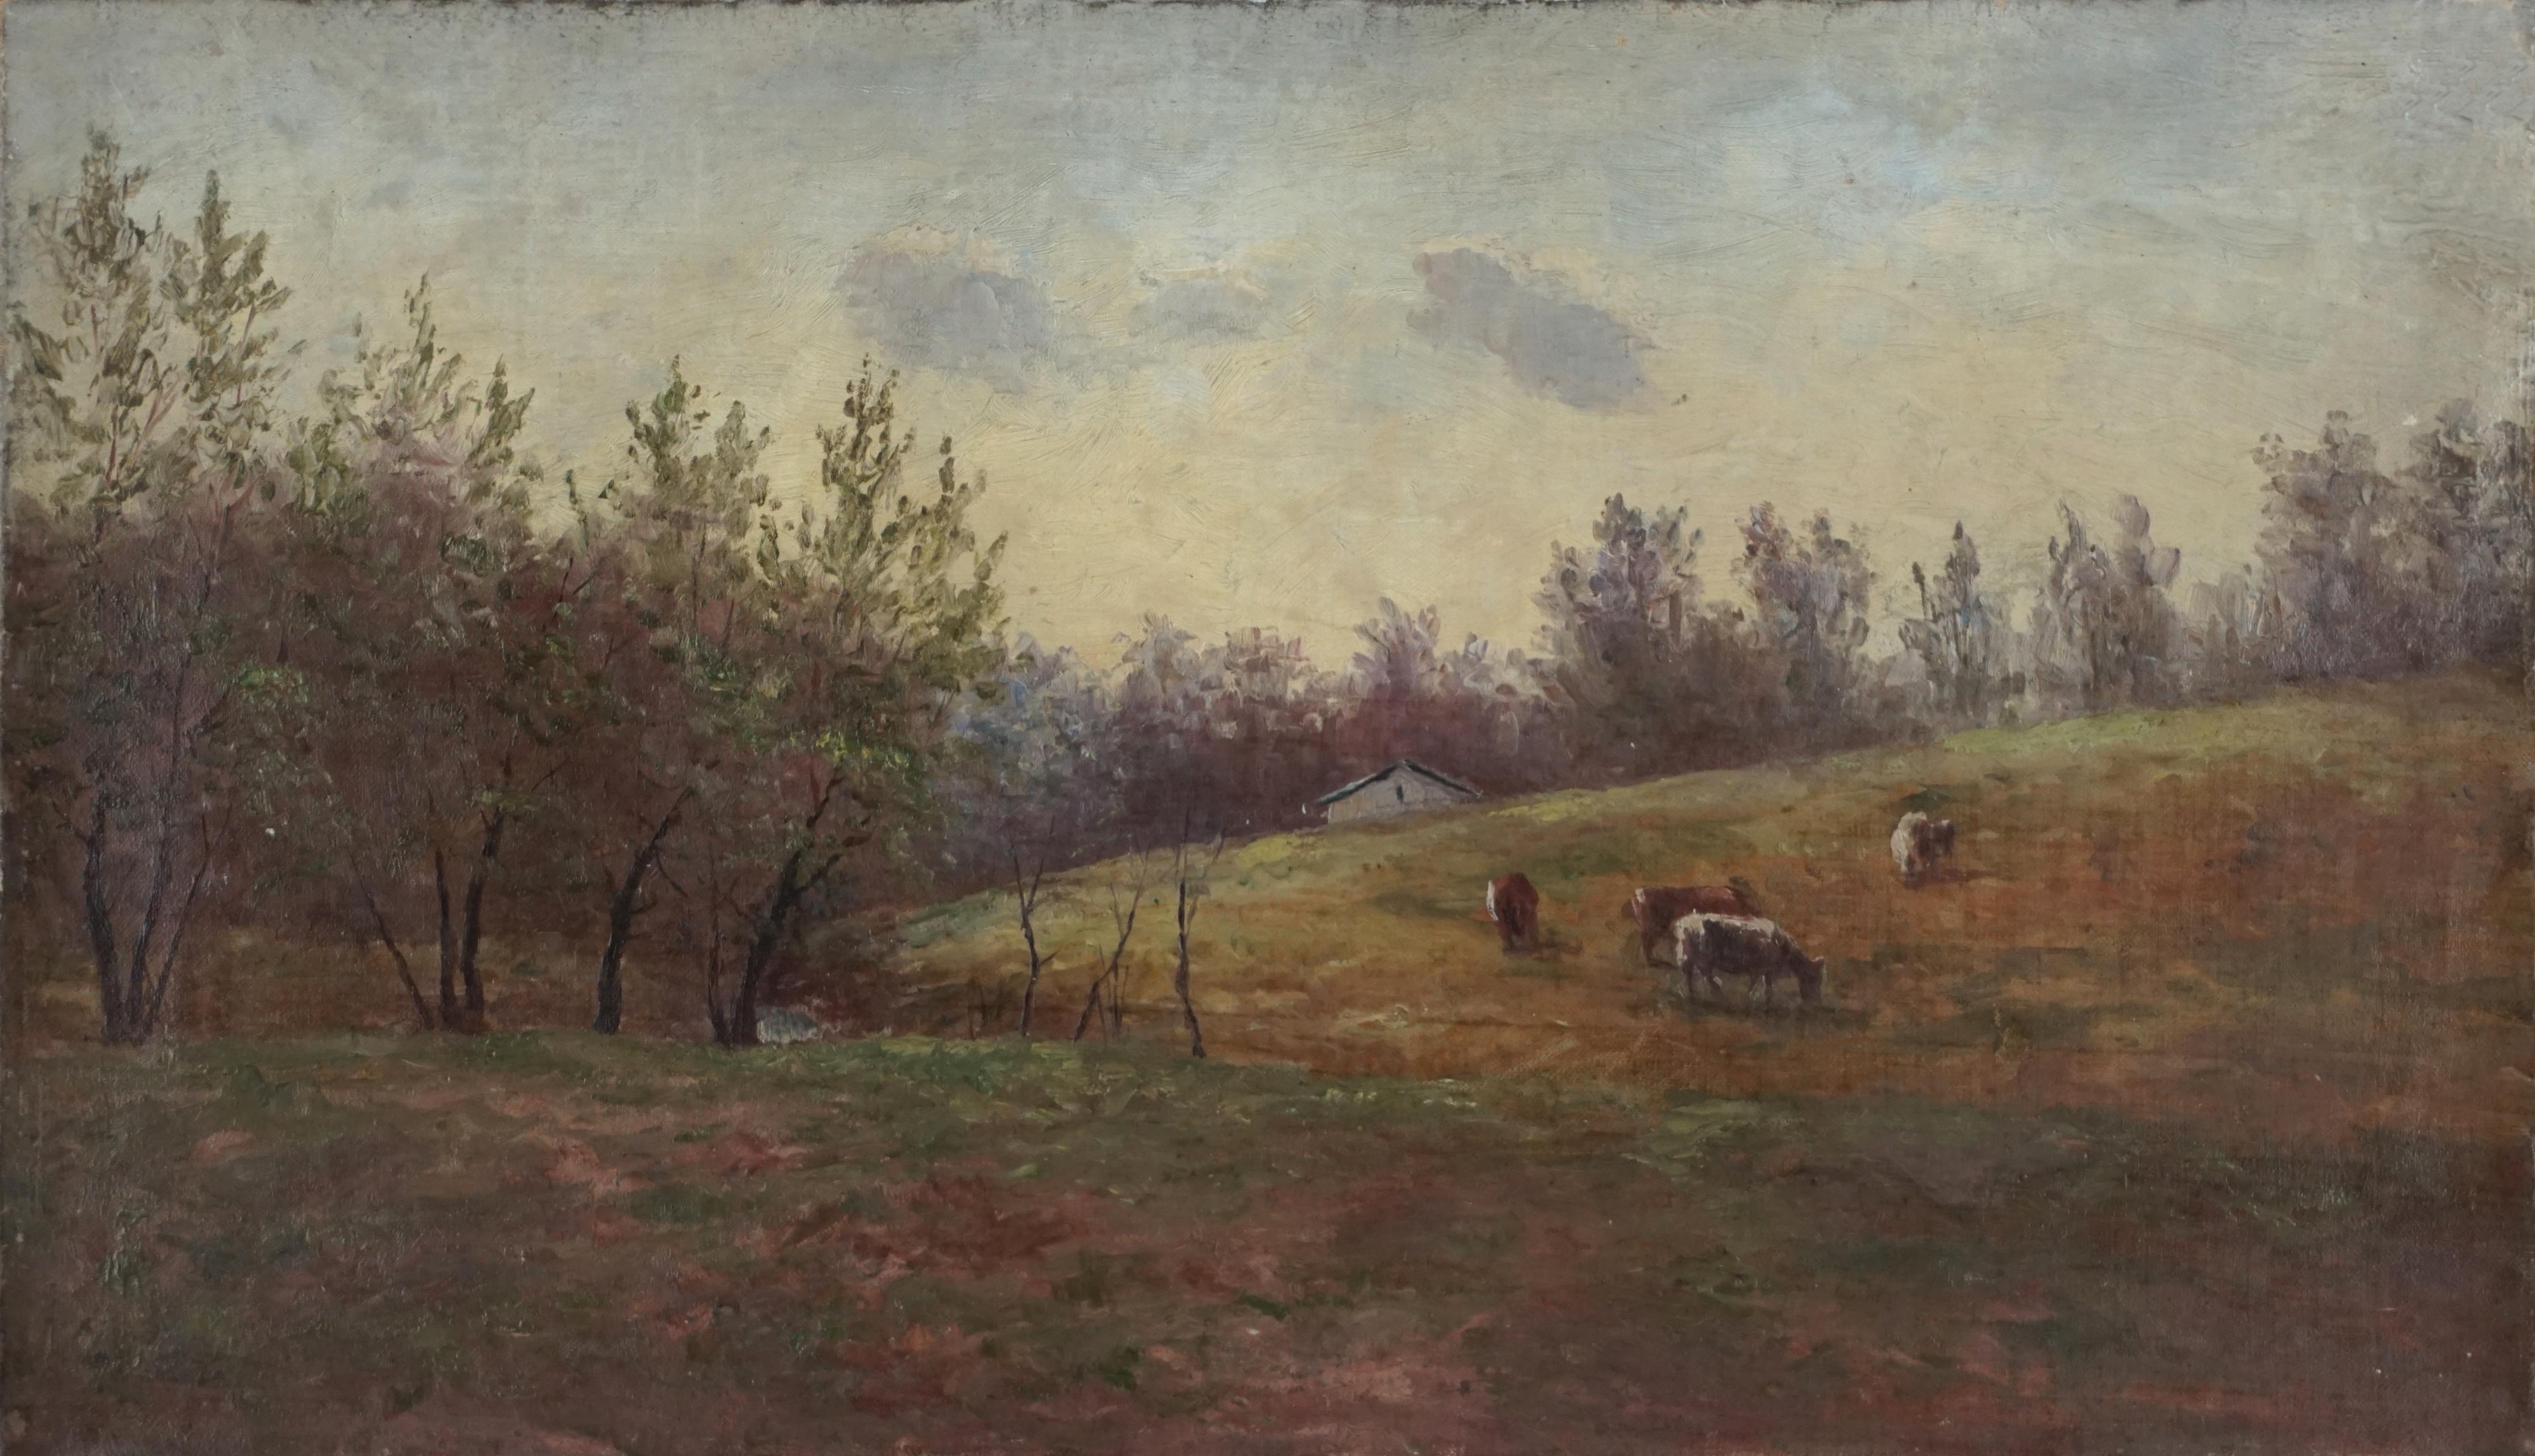 Landscape Painting John Frederick Kensett - Paysage bucolique de l'Hudson River School du 19e siècle